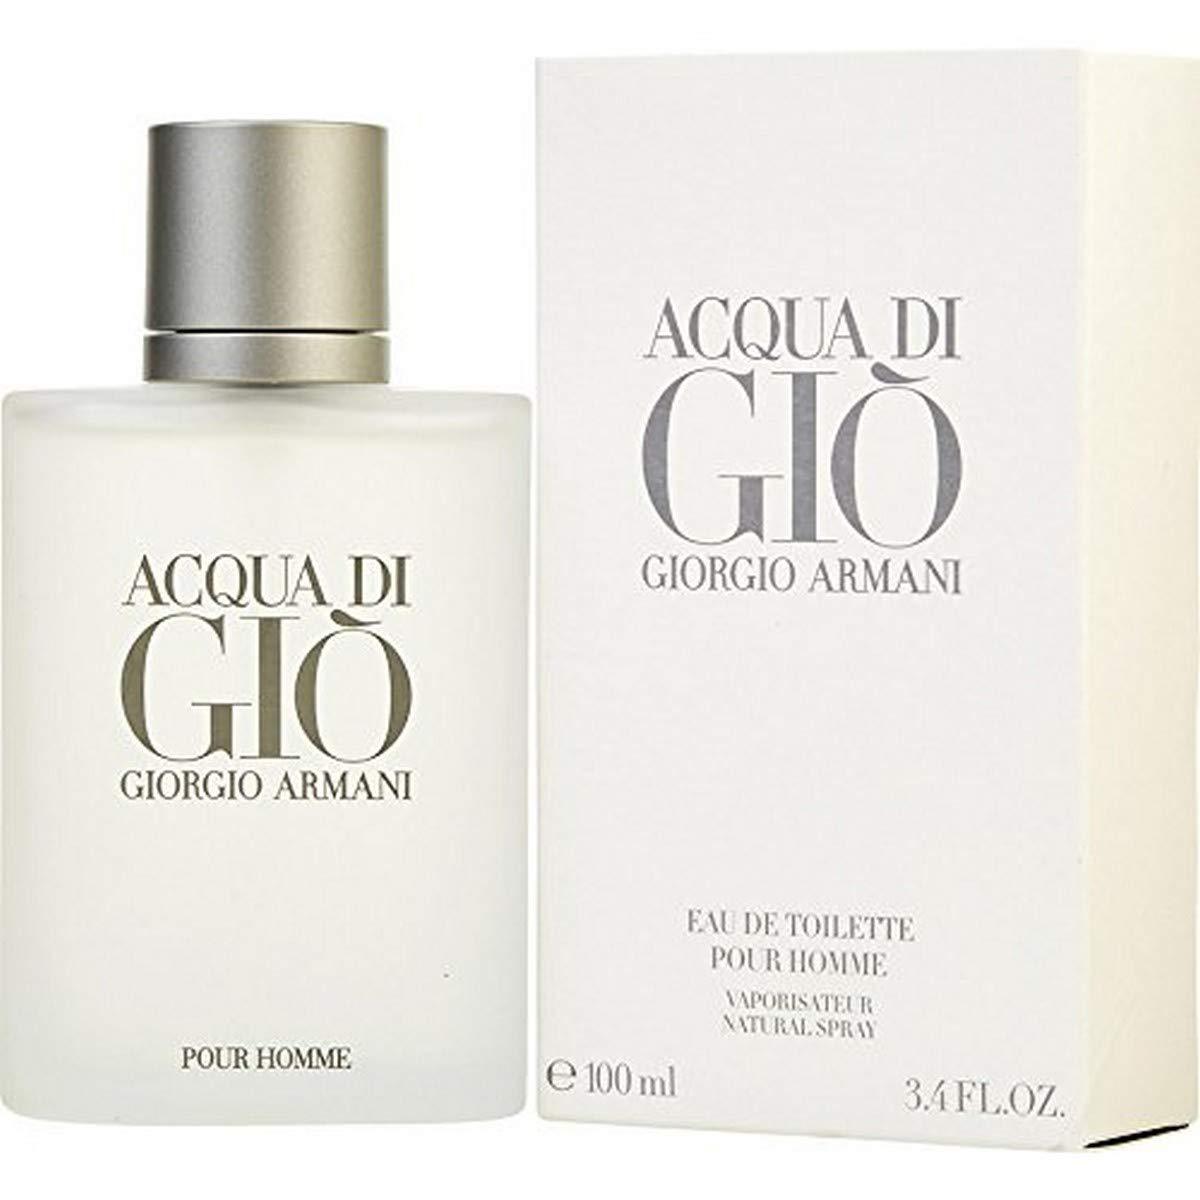 Giorgio Armani Acqua Di Gio by Giorgio Armani Men 3.4 oz Eau de Toilette Spray | FragranceBaba.com